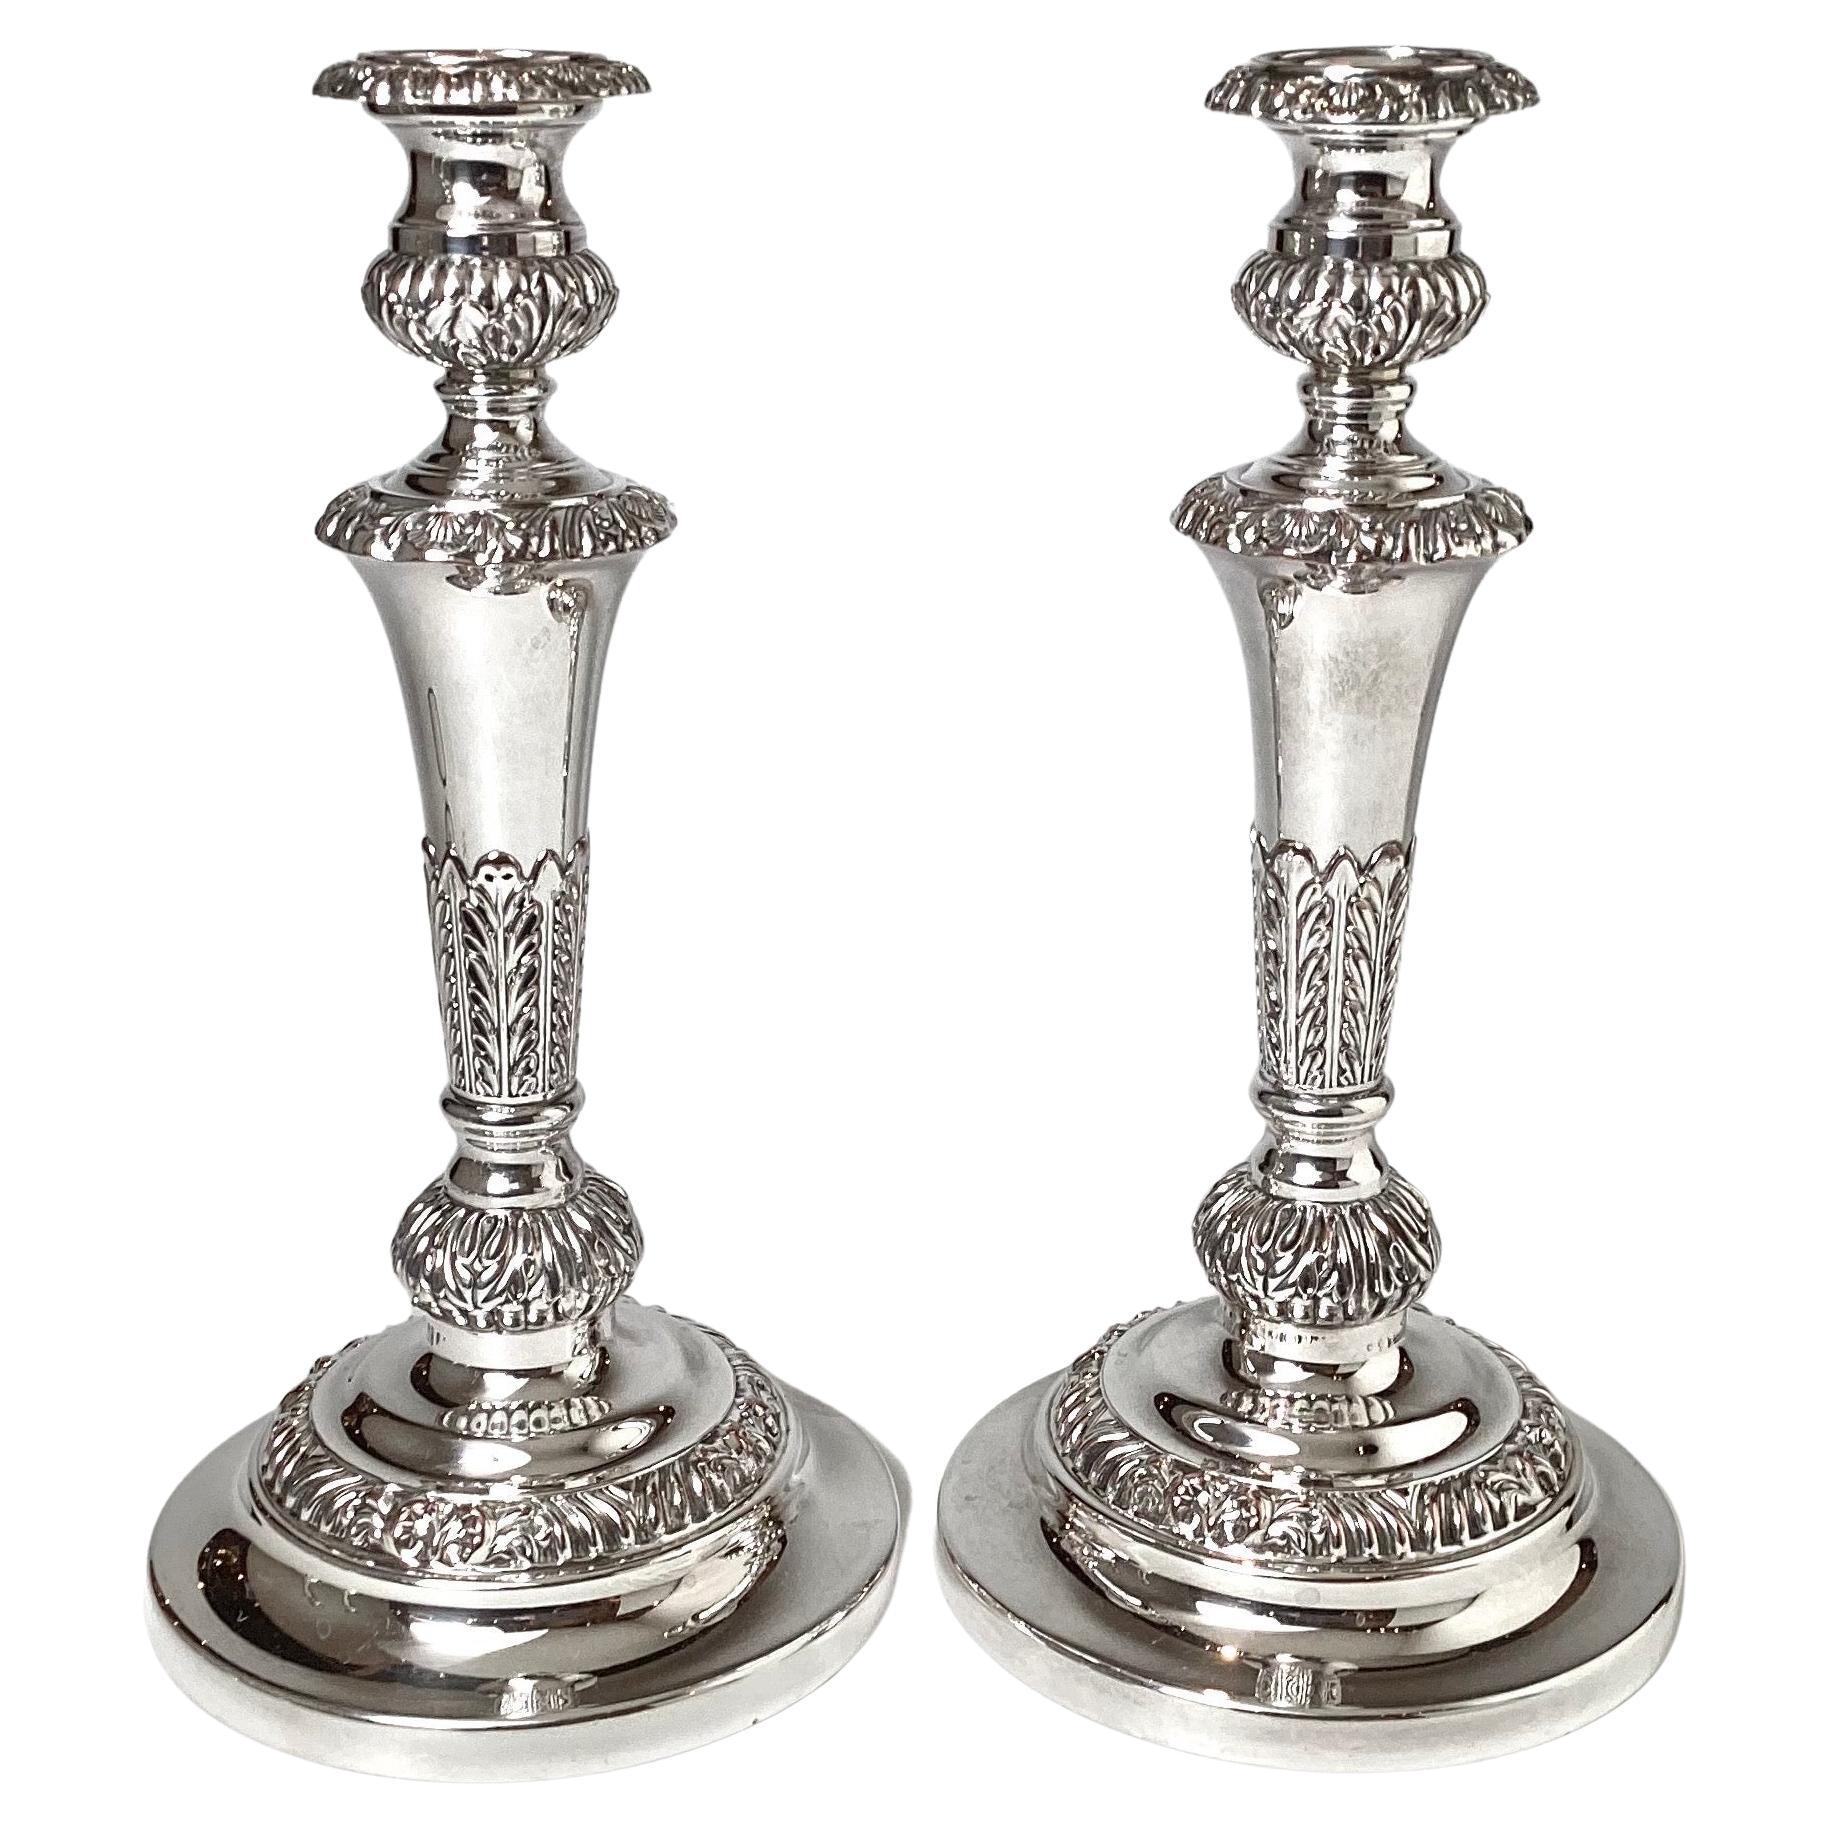 Paire de chandeliers anglais du 19ème siècle en métal argenté